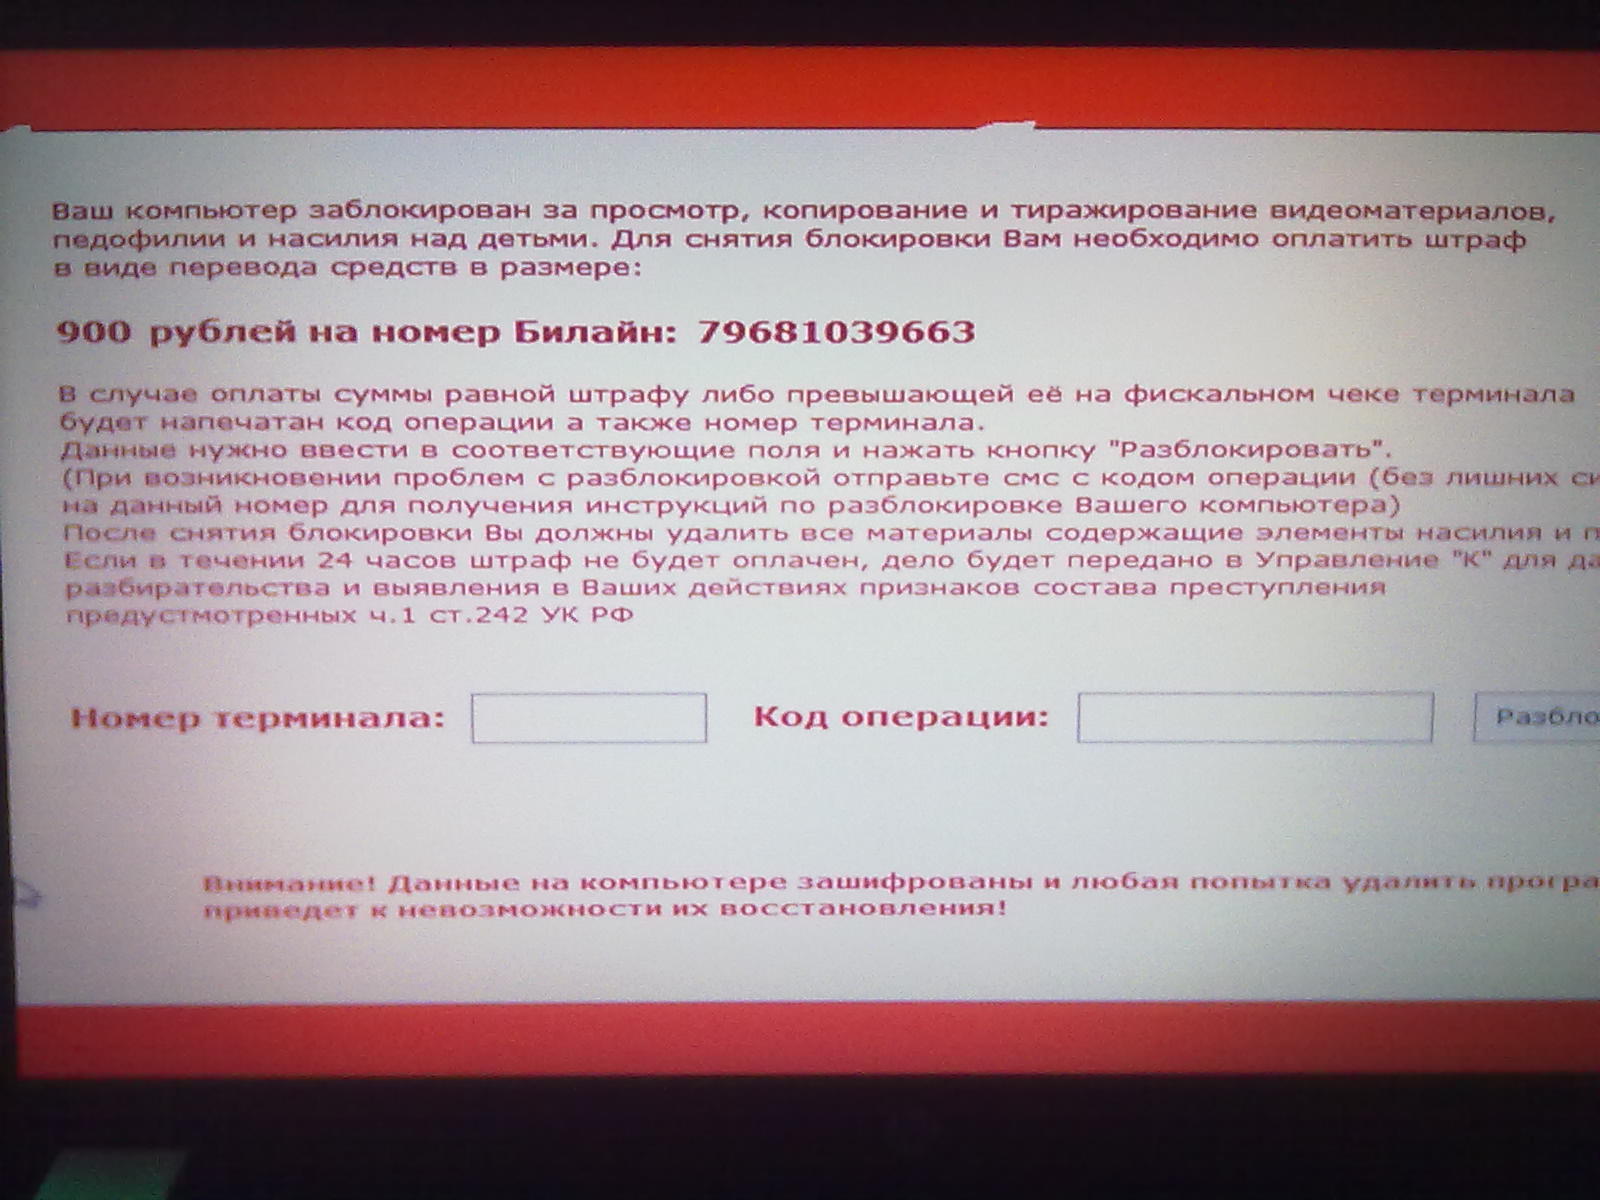 Компьютер Заблокирован За Просмотр Порно